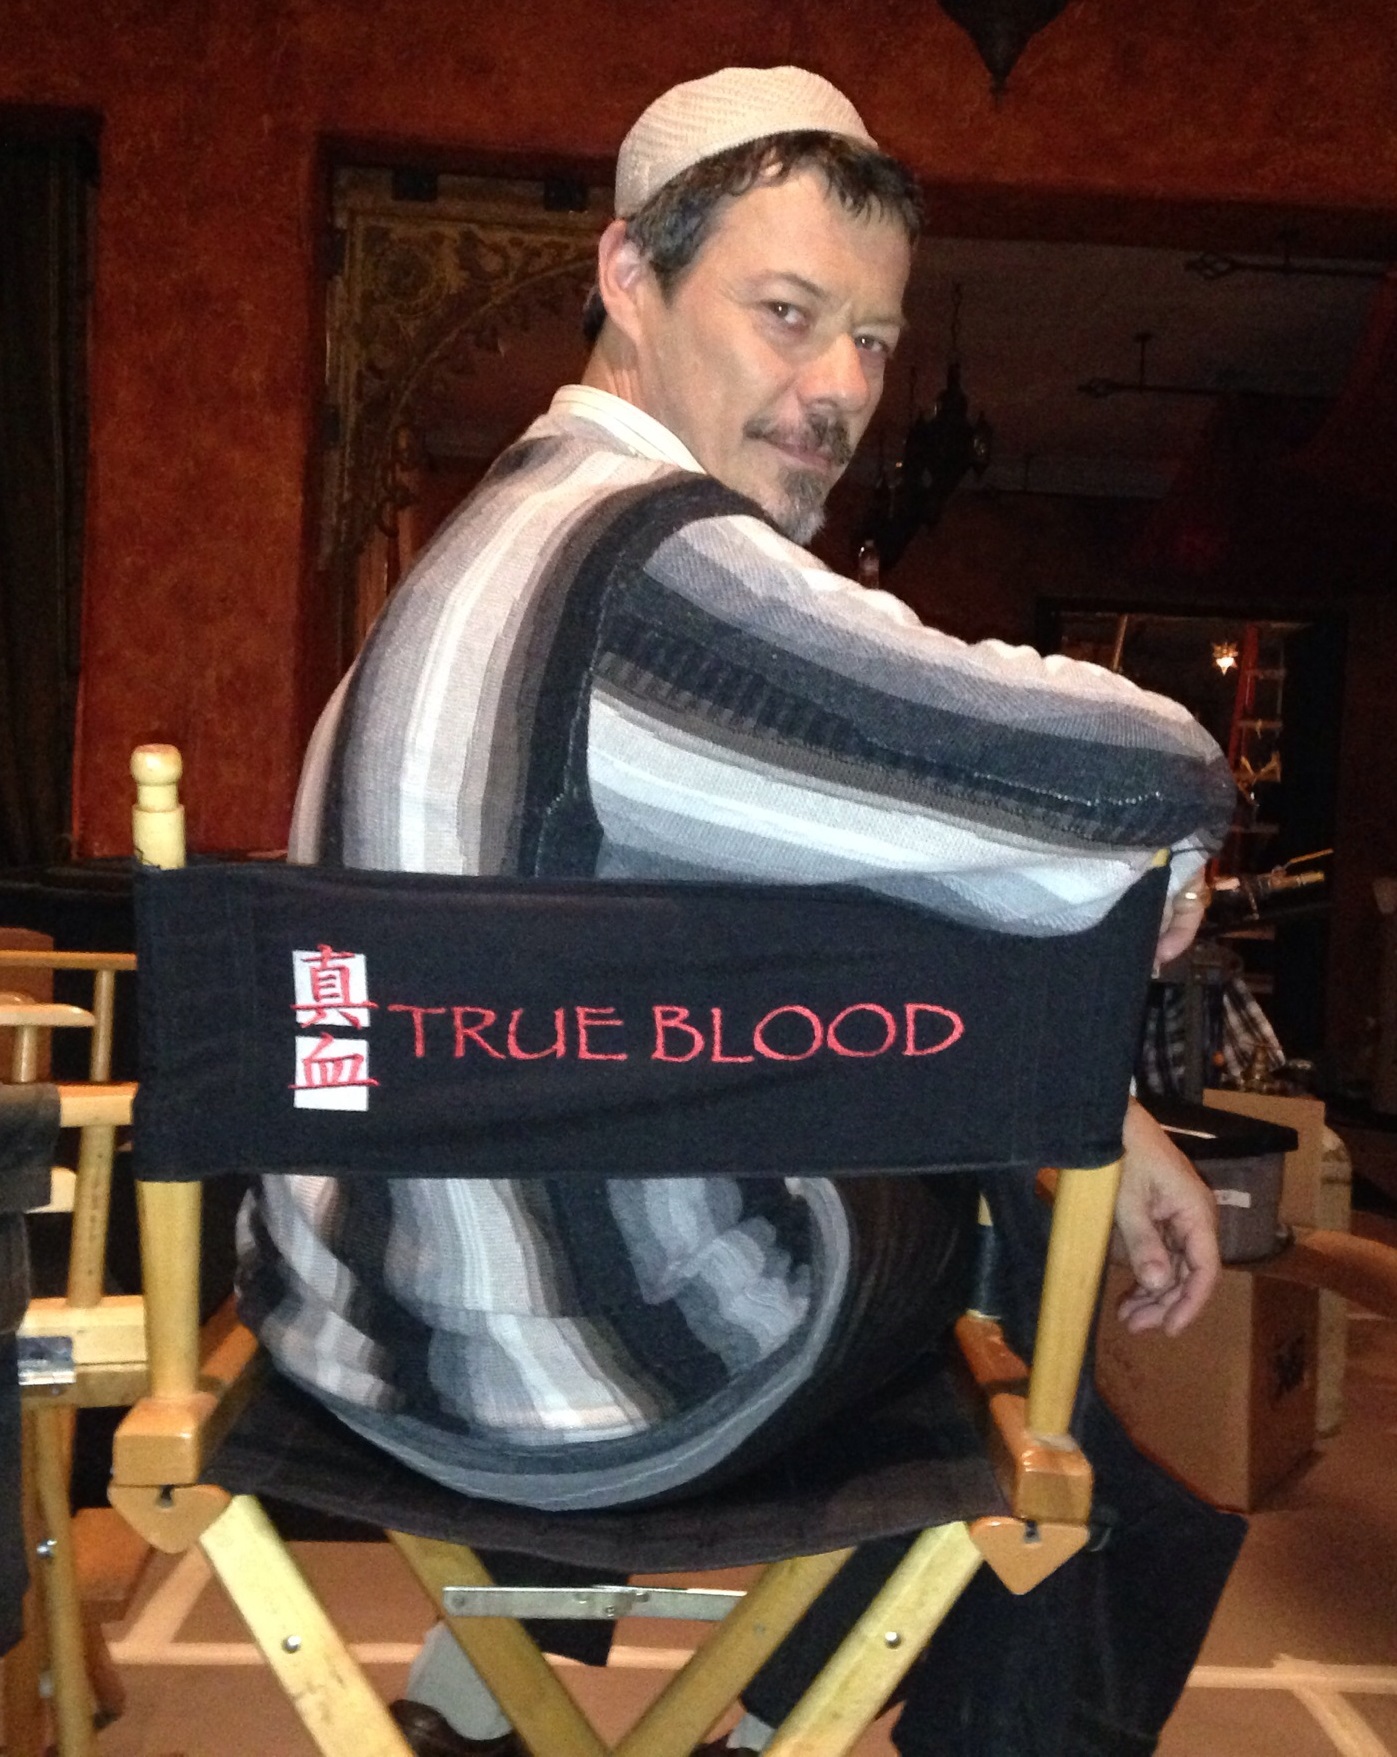 True Blood final season.